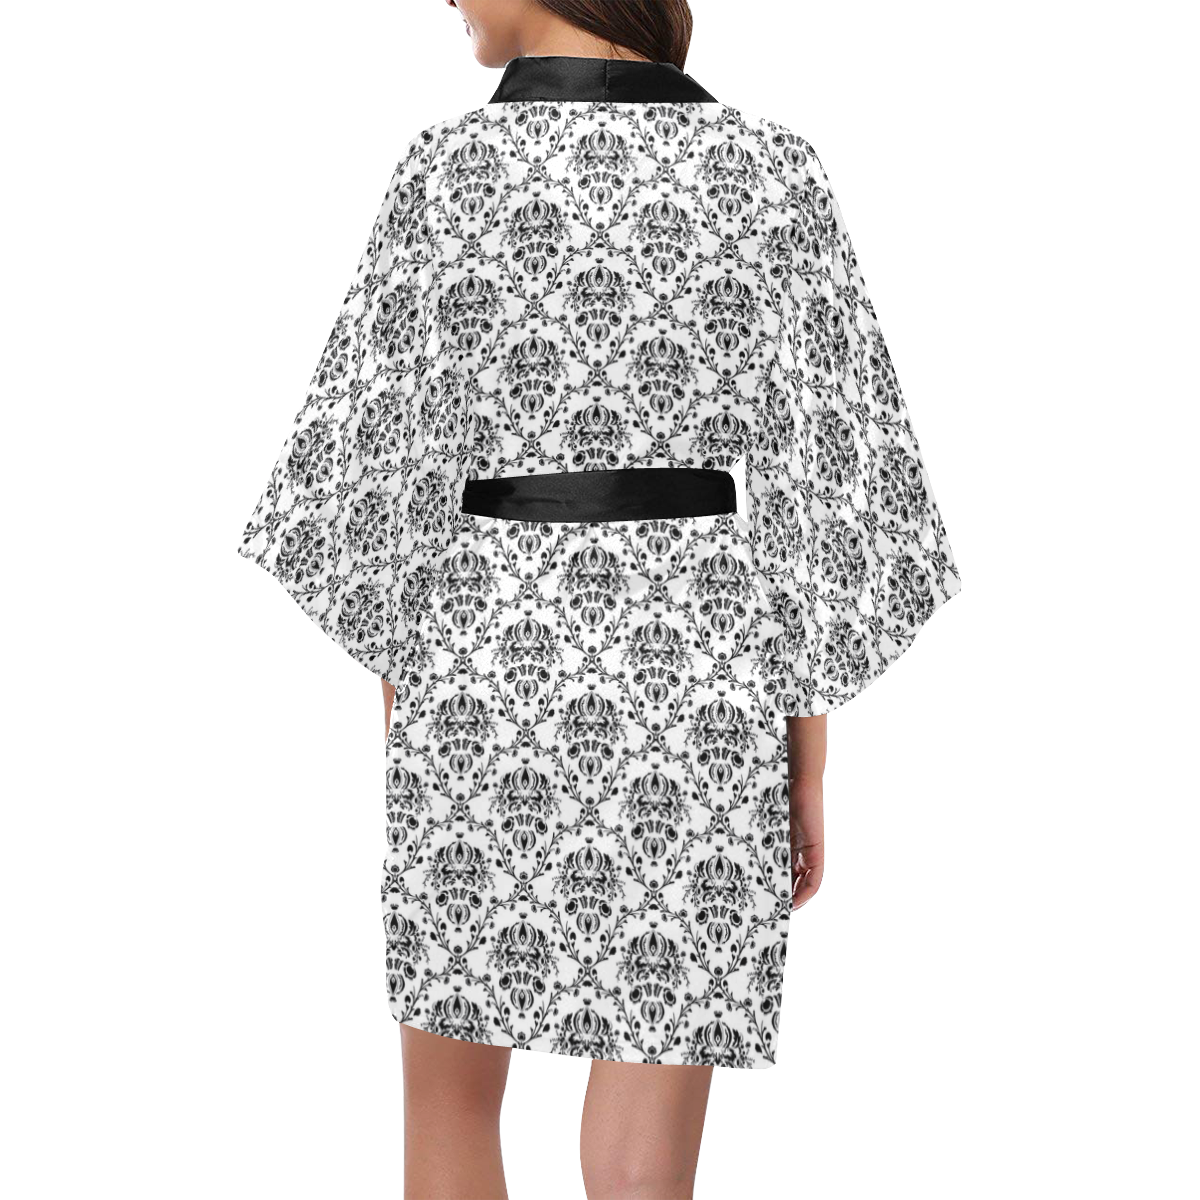 Black and White Damask Kimono Robe